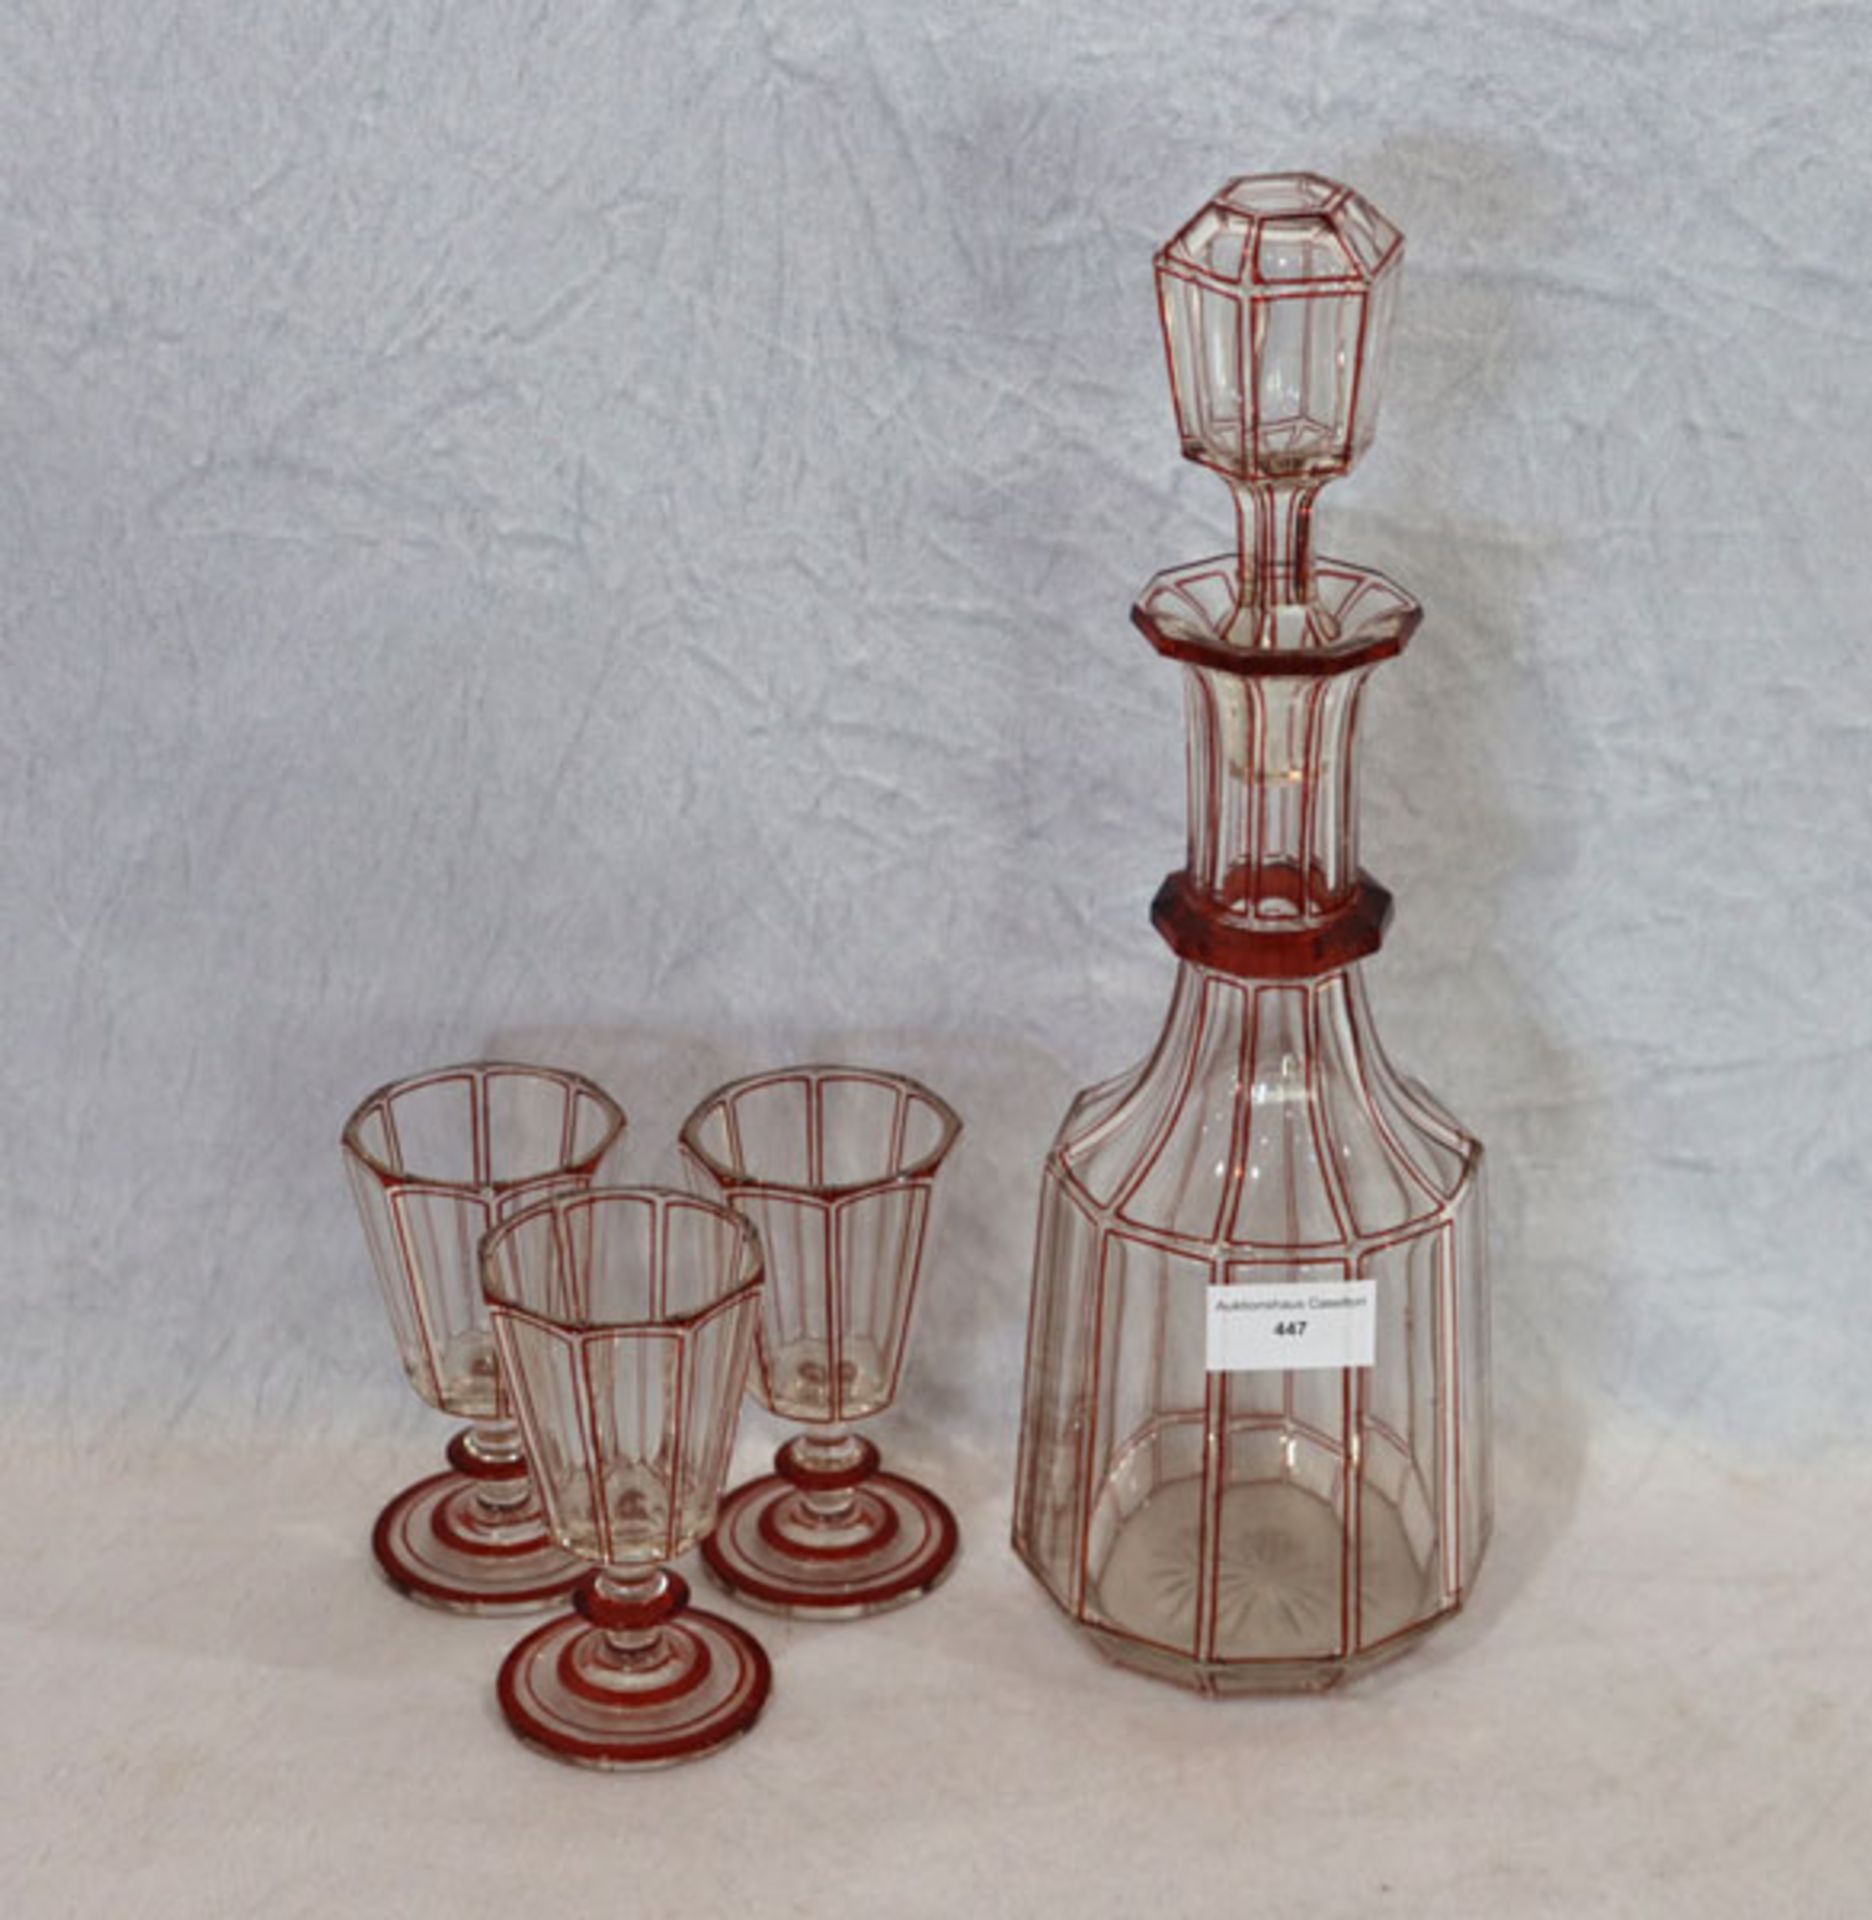 Glaskaraffe mit rotem Dekor, H 36 cm, D 10 cm, mit 3 passenden Gläsern, H 12 cm, D 7 cm, Ende 19.